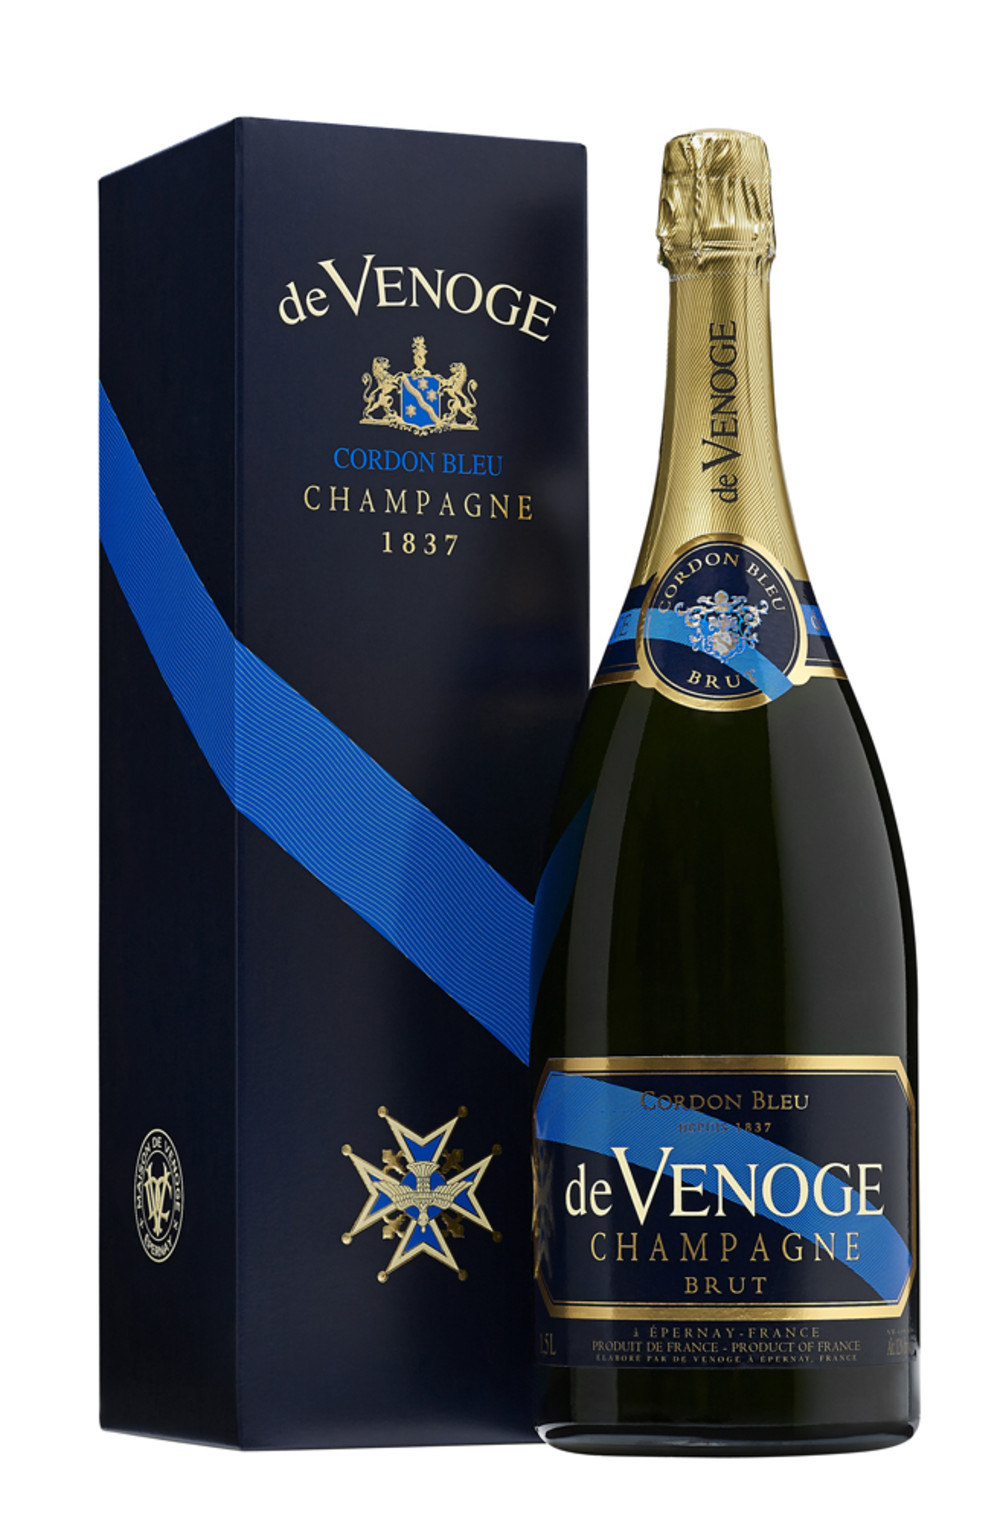 Champagne DeVENOGE_MAGNUM BRUT et etui_Packshot.jpg